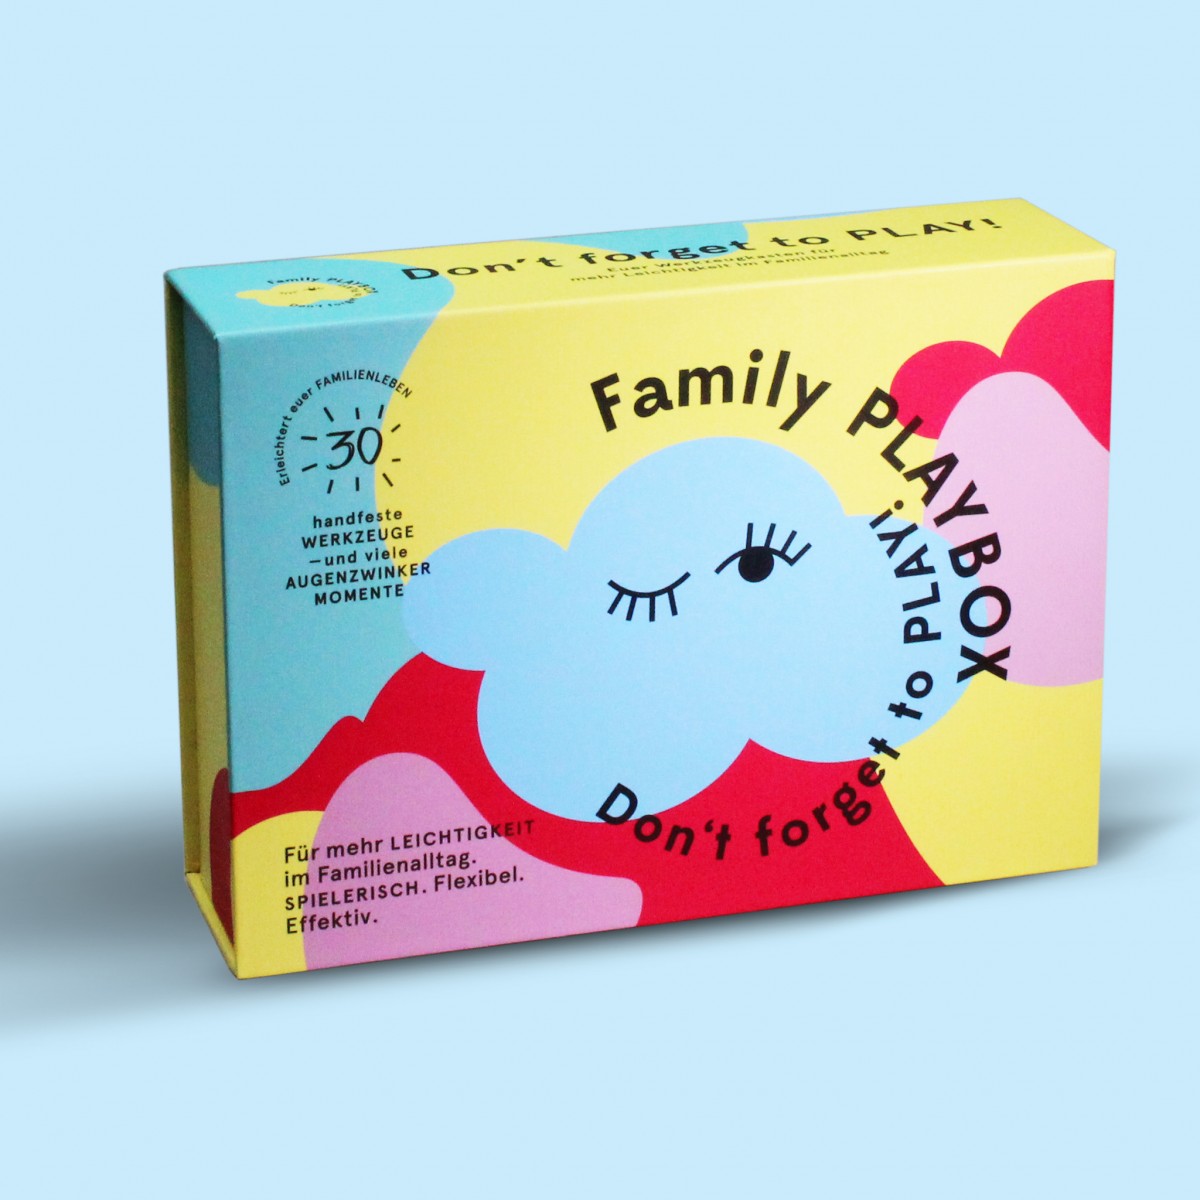 FAMILY PLAYBOX – Der Werkzeugkasten für mehr Leichtigkeit im Familienleben.